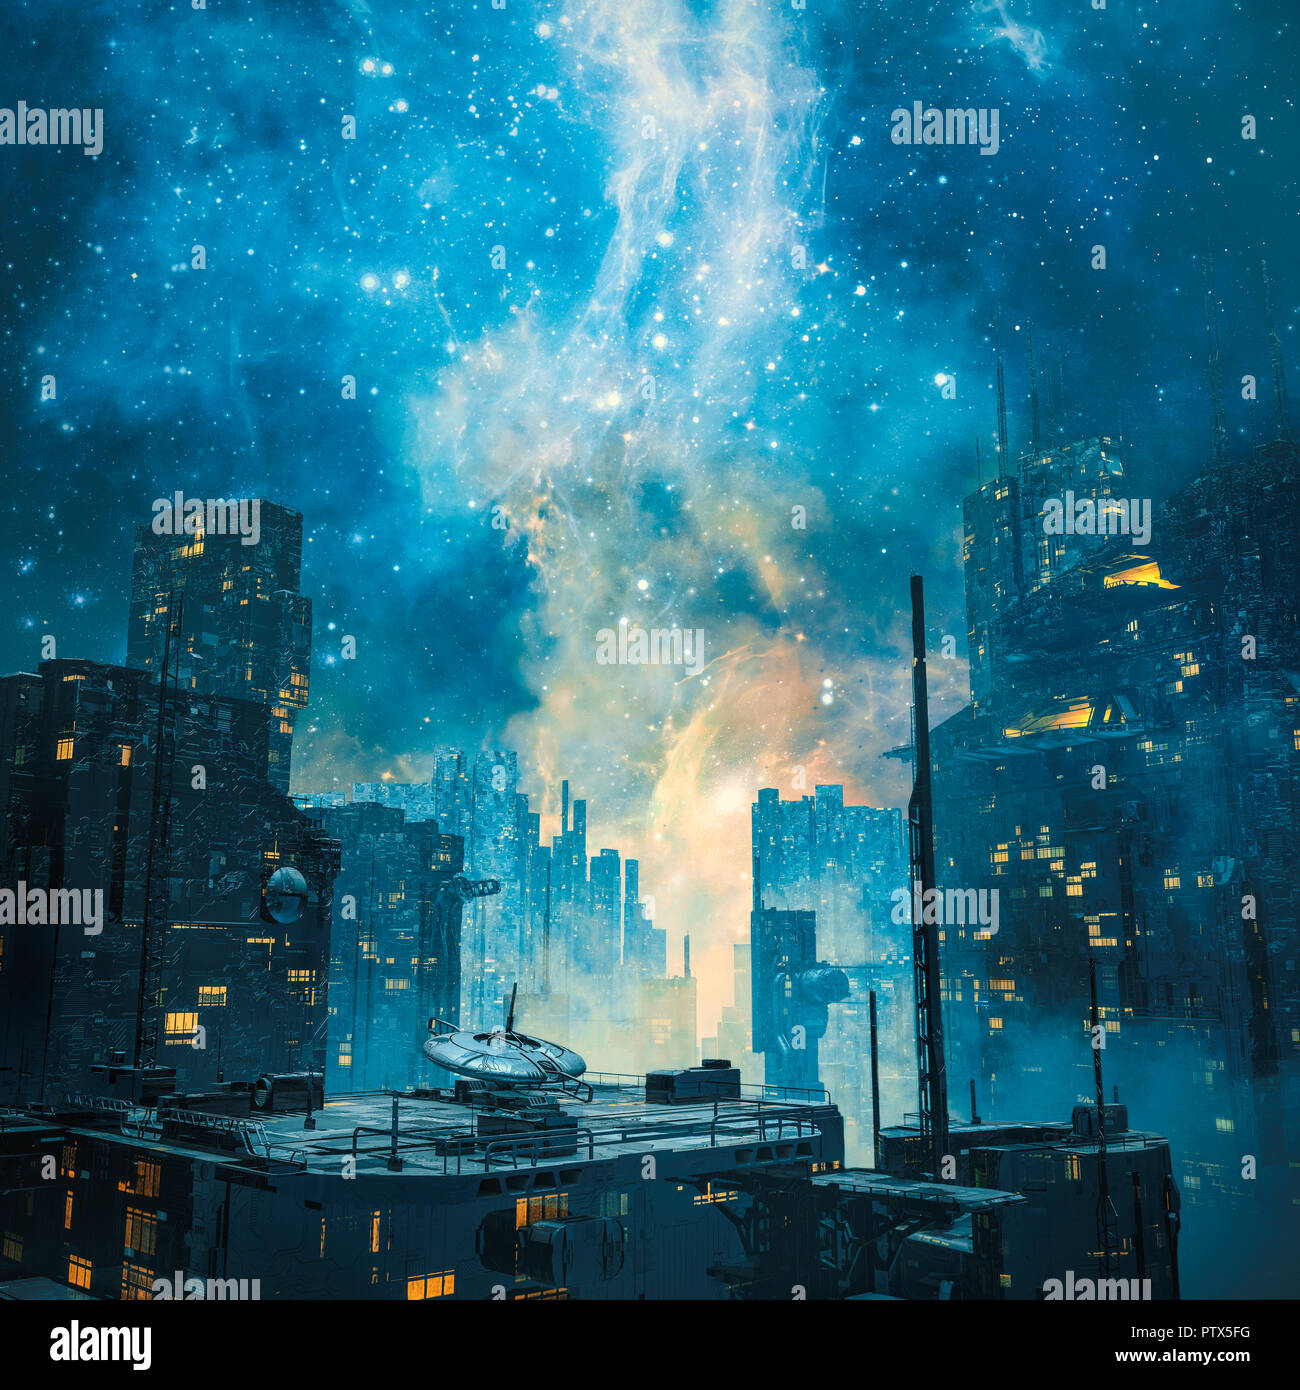 Espacio galáctico colonia por noche / 3D ilustración de oscura ciencia ficción futurista ciudad bajo una galaxia brillando en el cielo Foto de stock